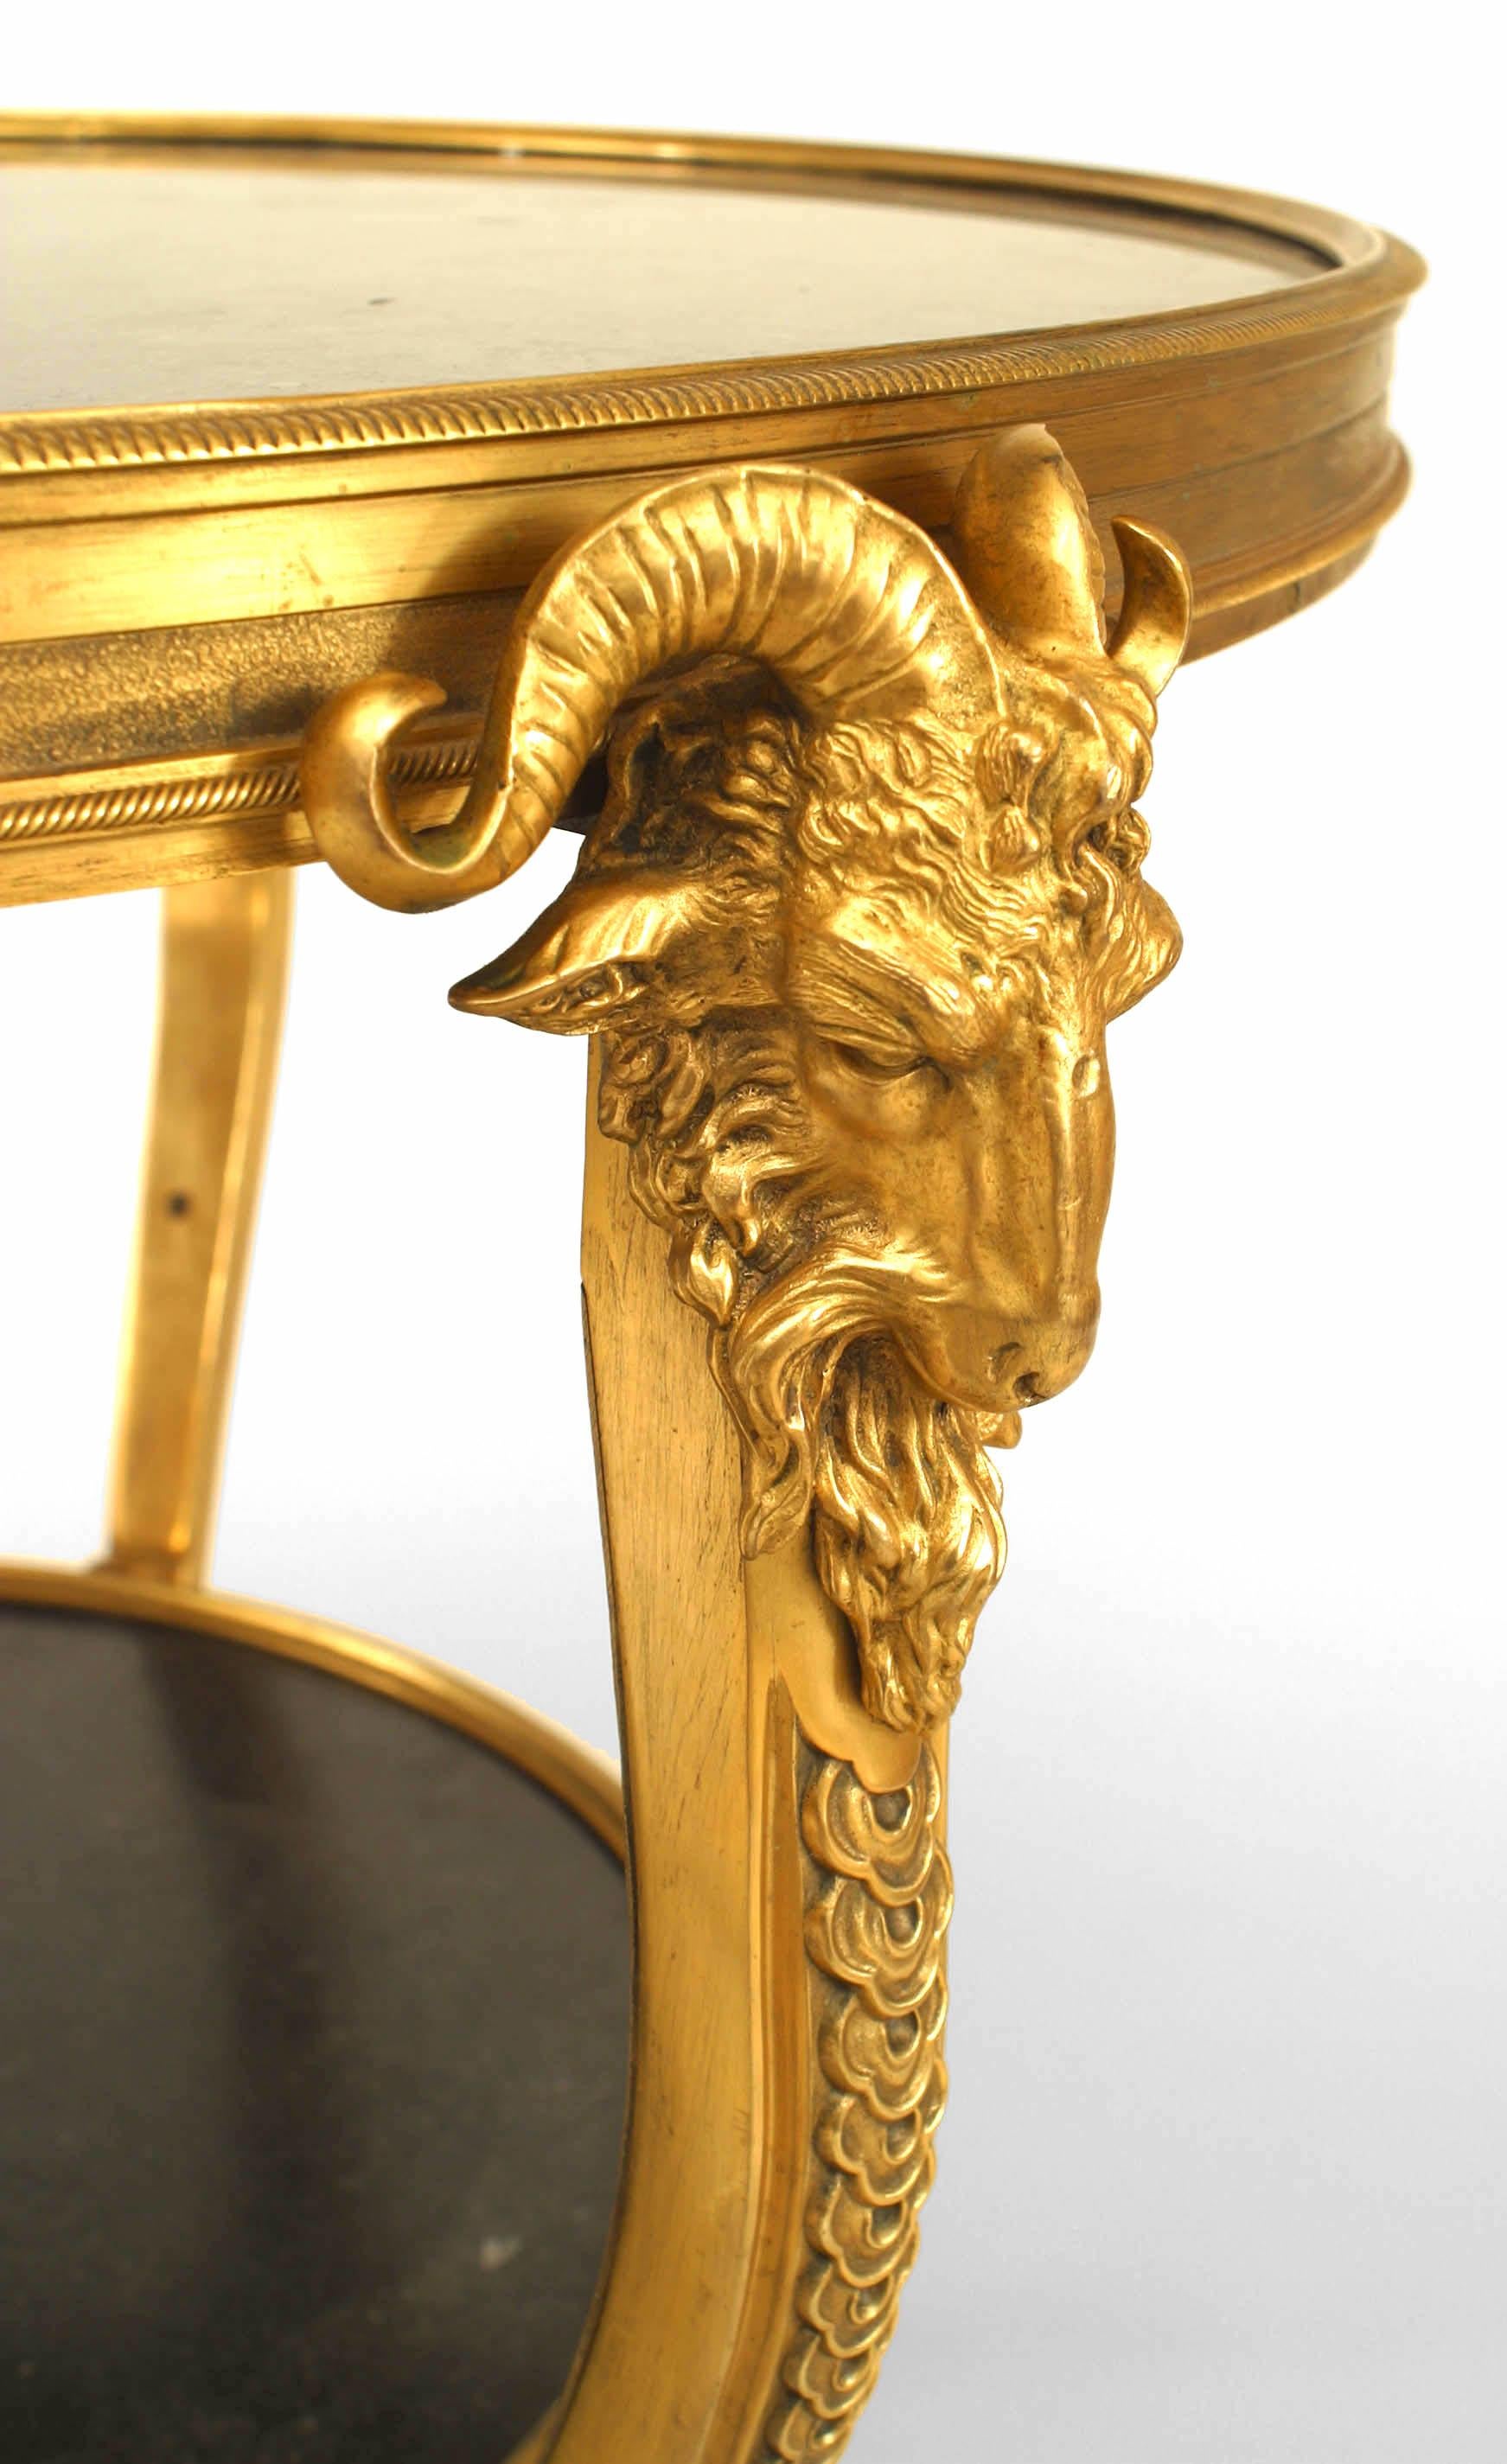 Table d'appoint ronde de style Louis XVI (19/20e siècle) en bronze doré à tête de bélier, à trois pieds supportant un plateau et une tablette en marbre noir, avec une traverse inférieure.
